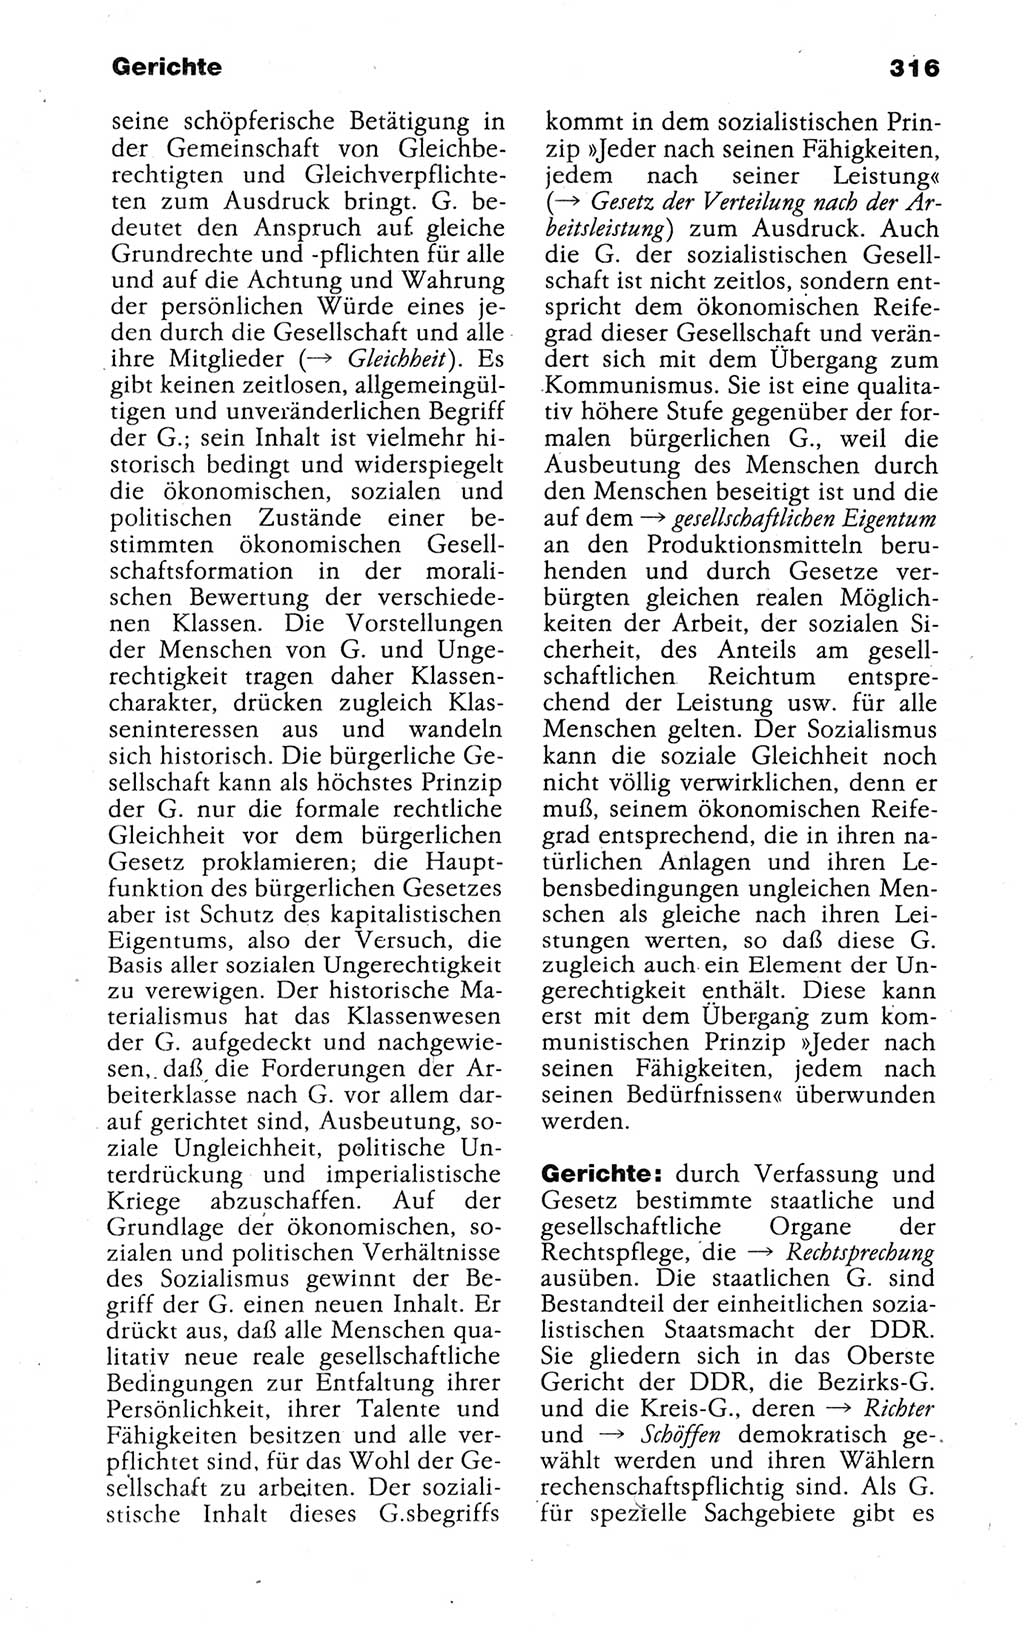 Kleines politisches Wörterbuch [Deutsche Demokratische Republik (DDR)] 1988, Seite 316 (Kl. pol. Wb. DDR 1988, S. 316)